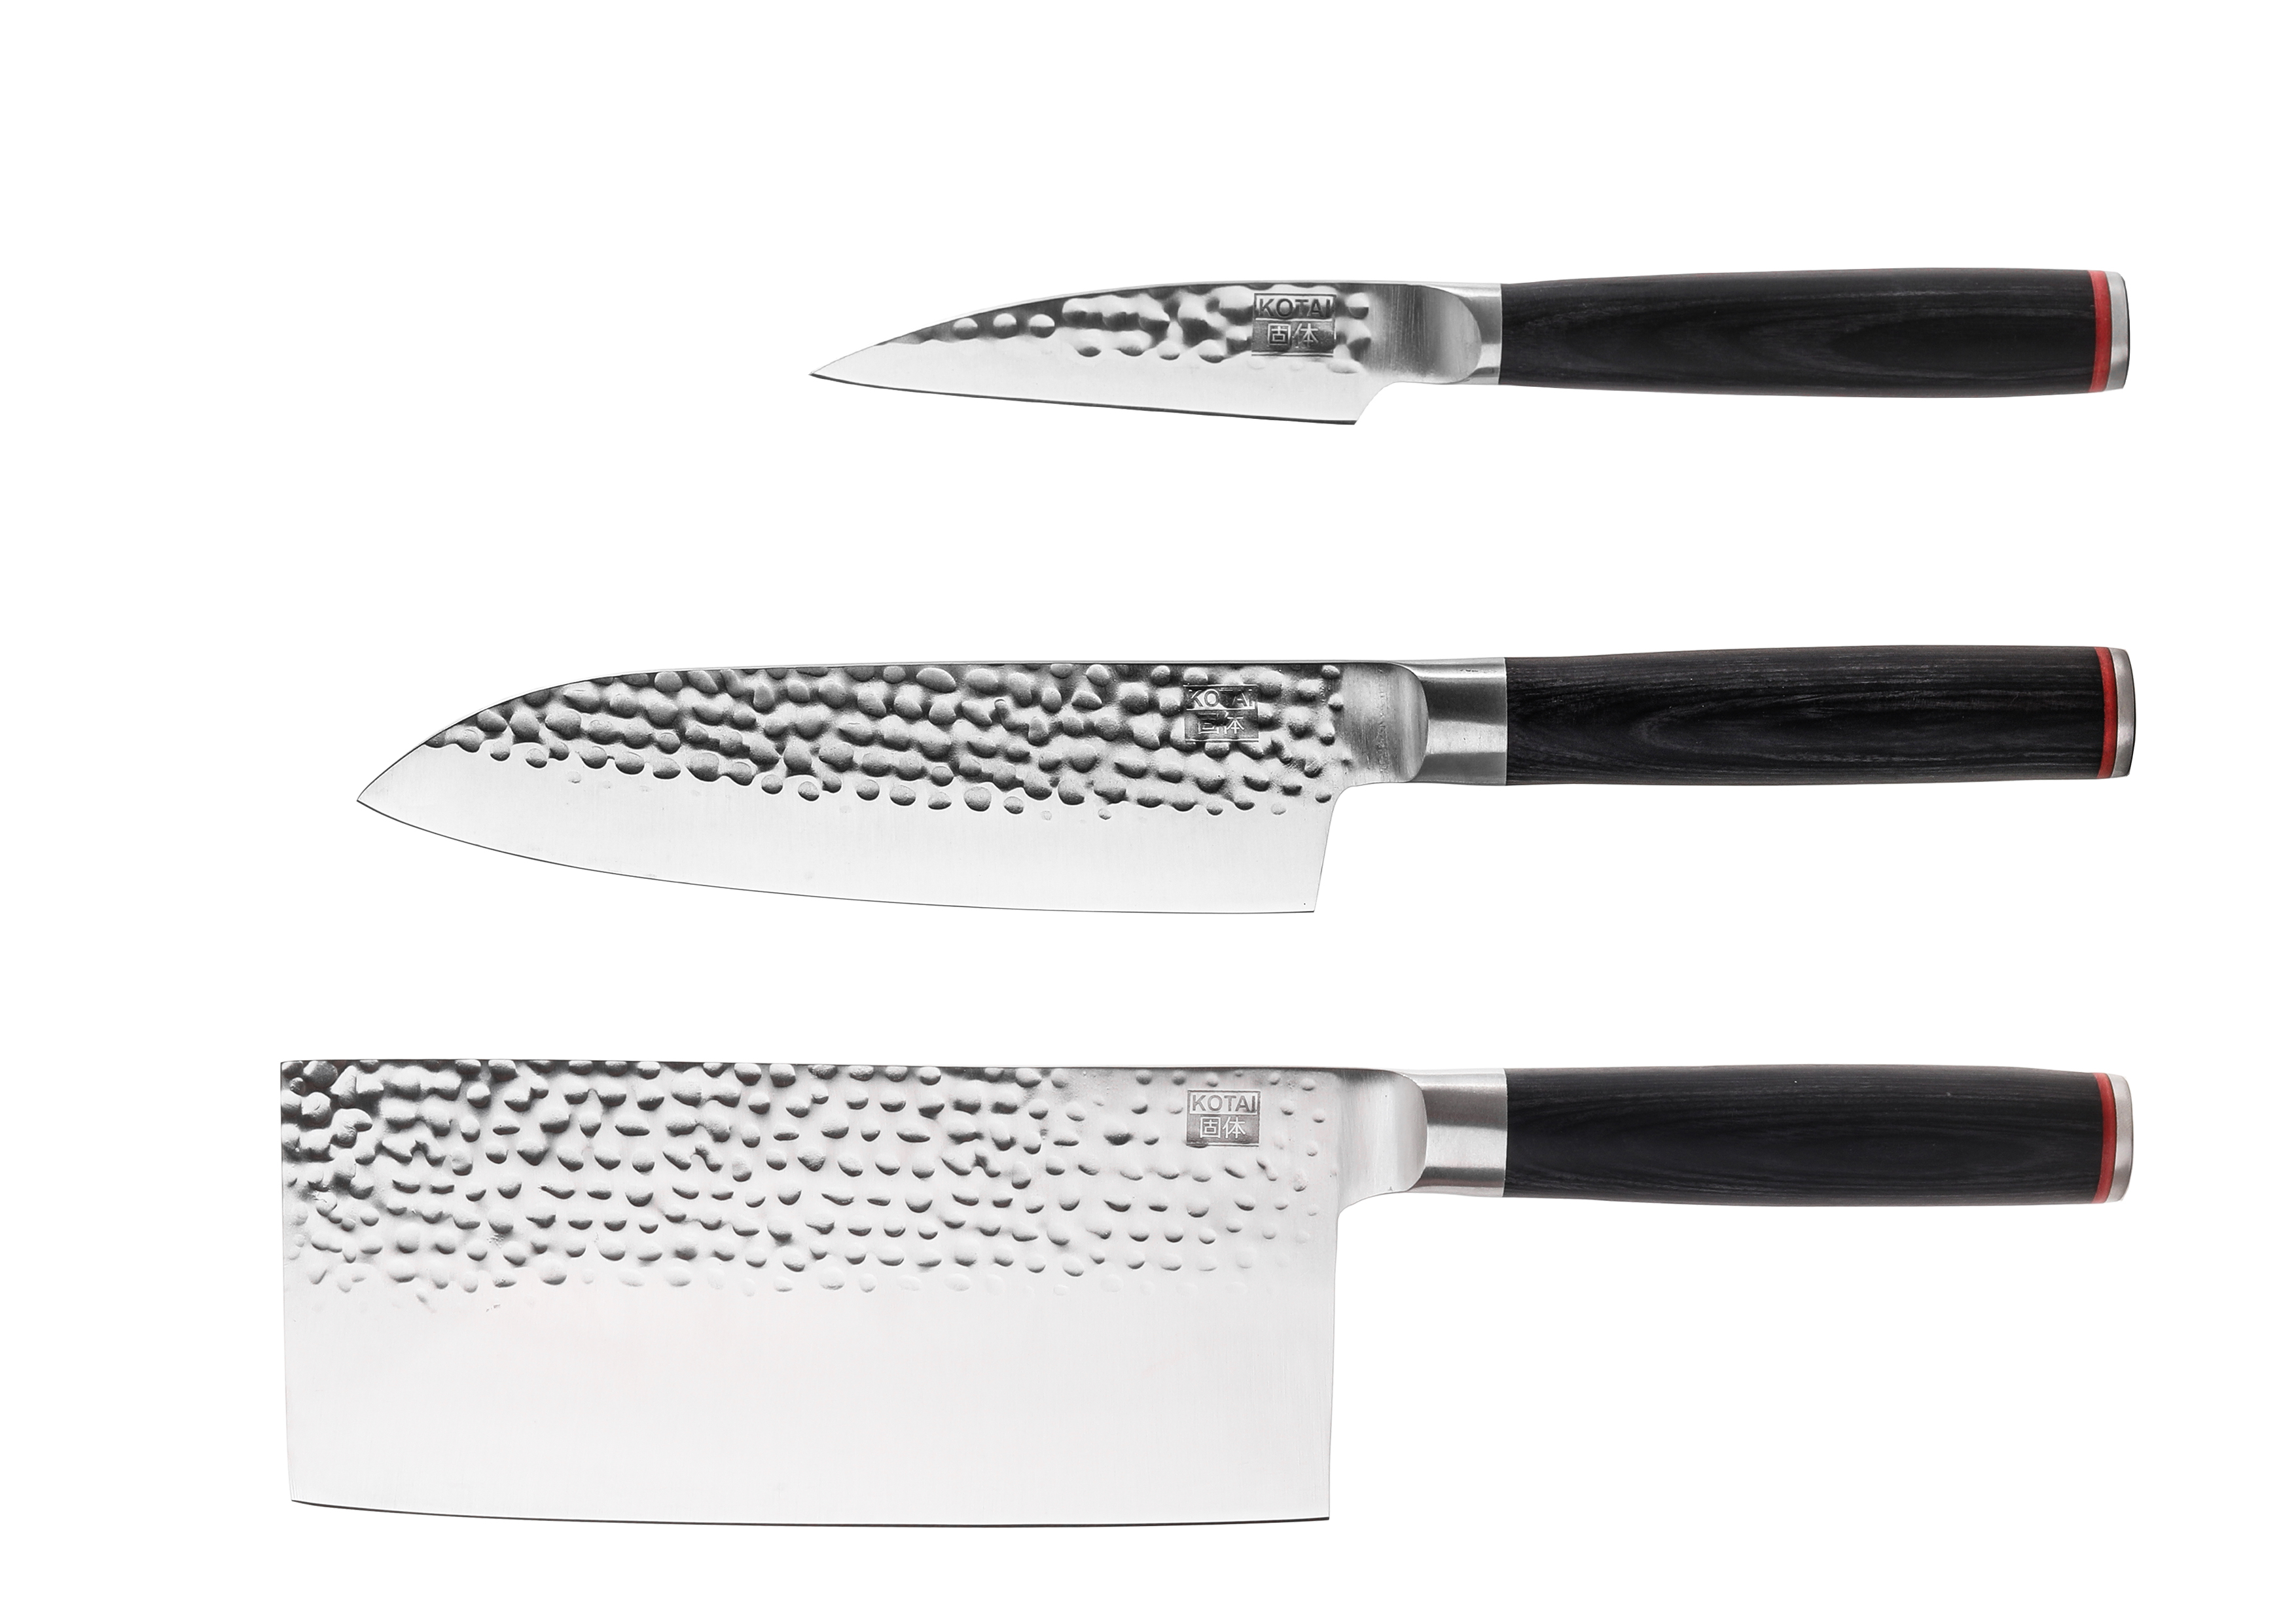 Le Set Asiatique : 3 couteaux (couteau d'office + santoku + hachoir) - Pakka